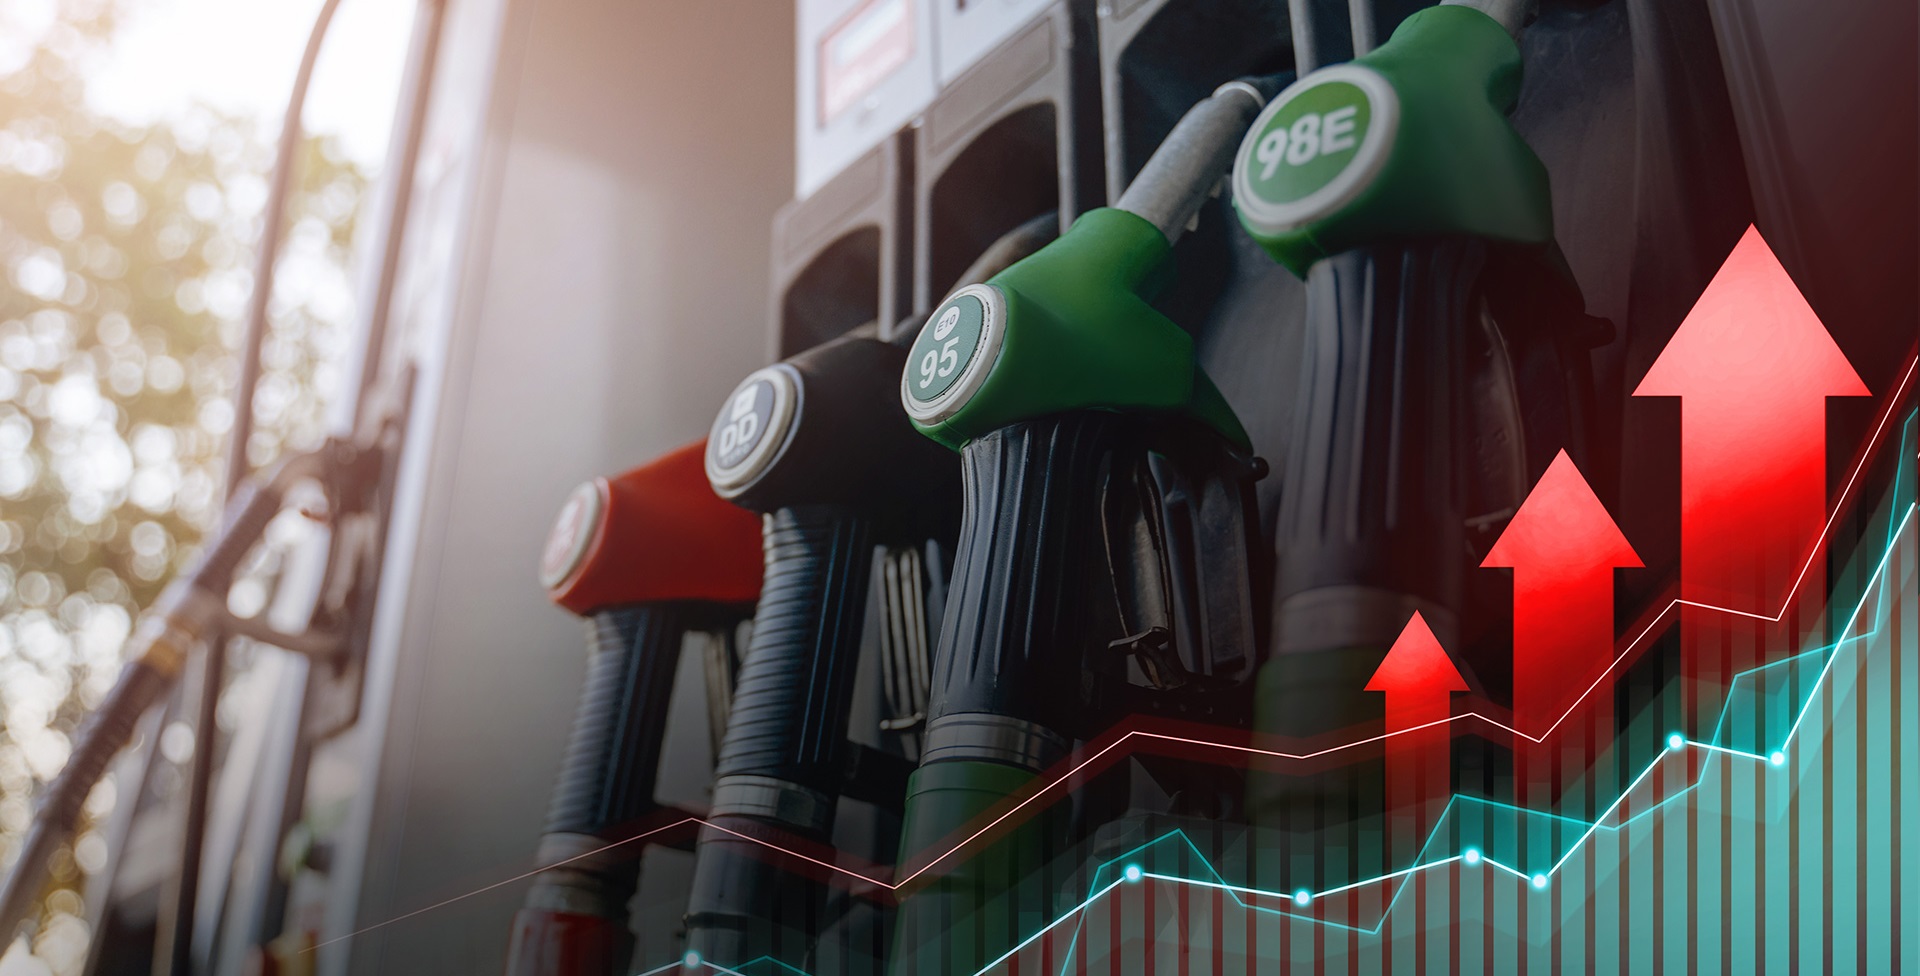 Tunisie – La majoration des prix des carburants pourra atteindre 7% chaque mois